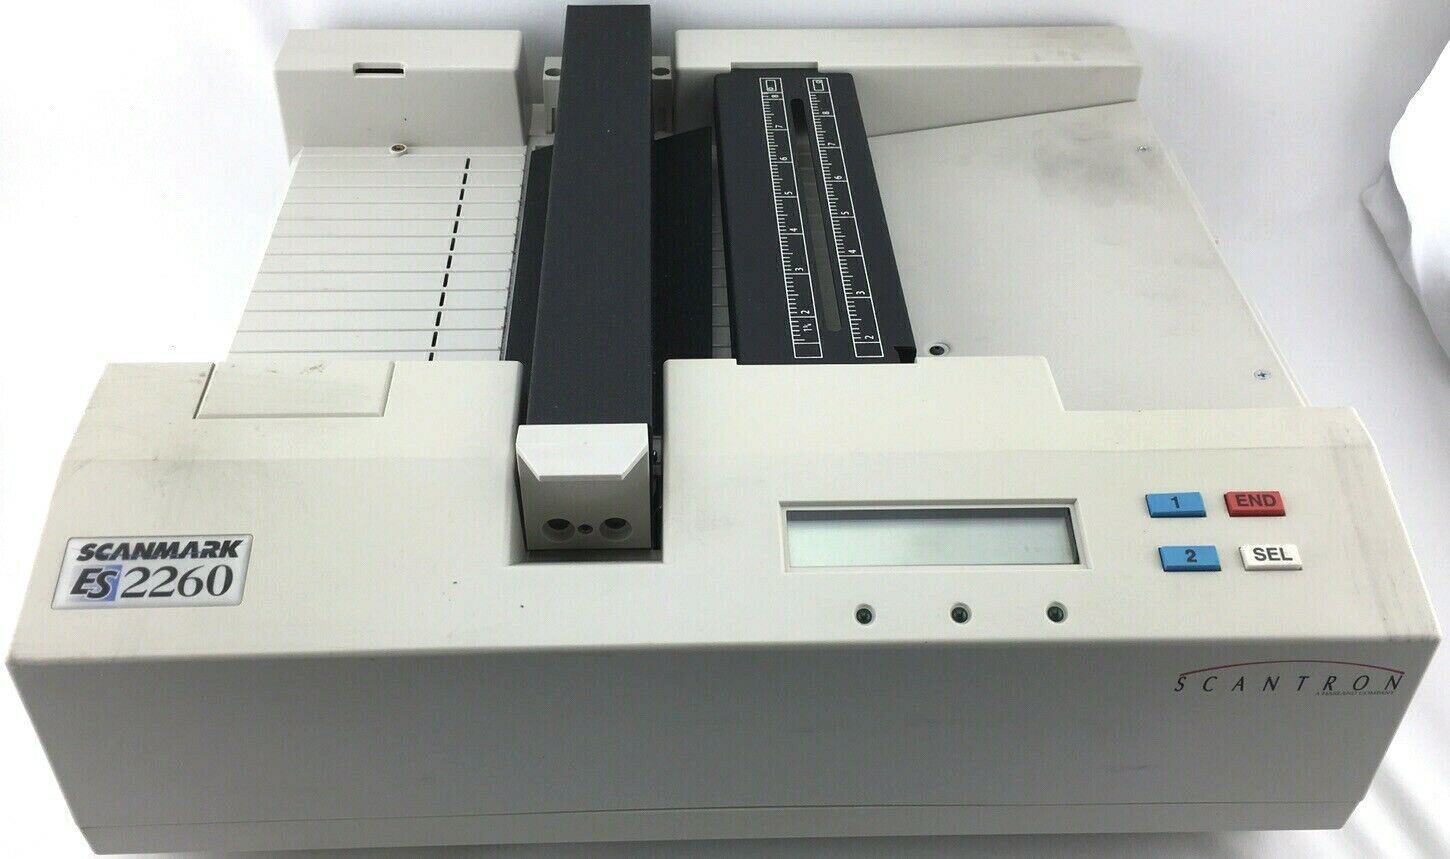 Scantron Scanmark ES2260 Optical Mark Reader Test Scanner w/ Accessories